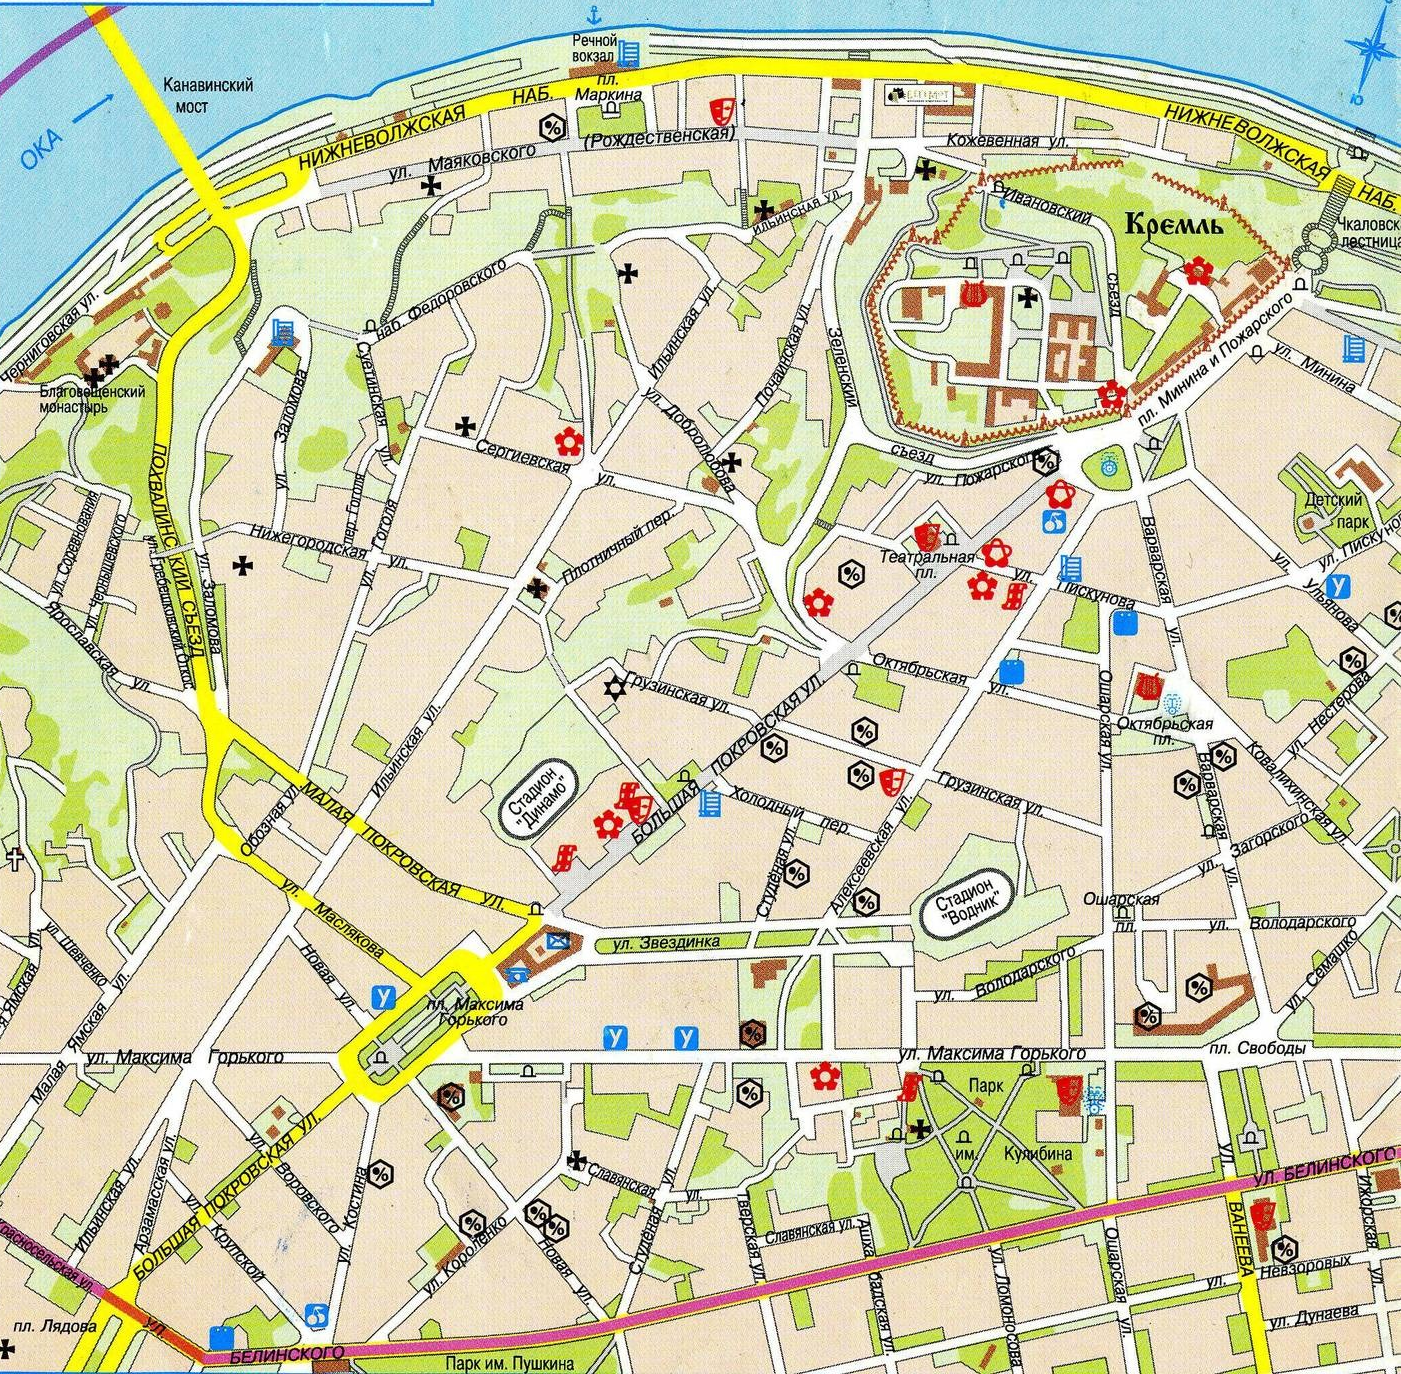 Куда сходить в петербурге зимой 2021-2022? путеводитель для туристов и жителей